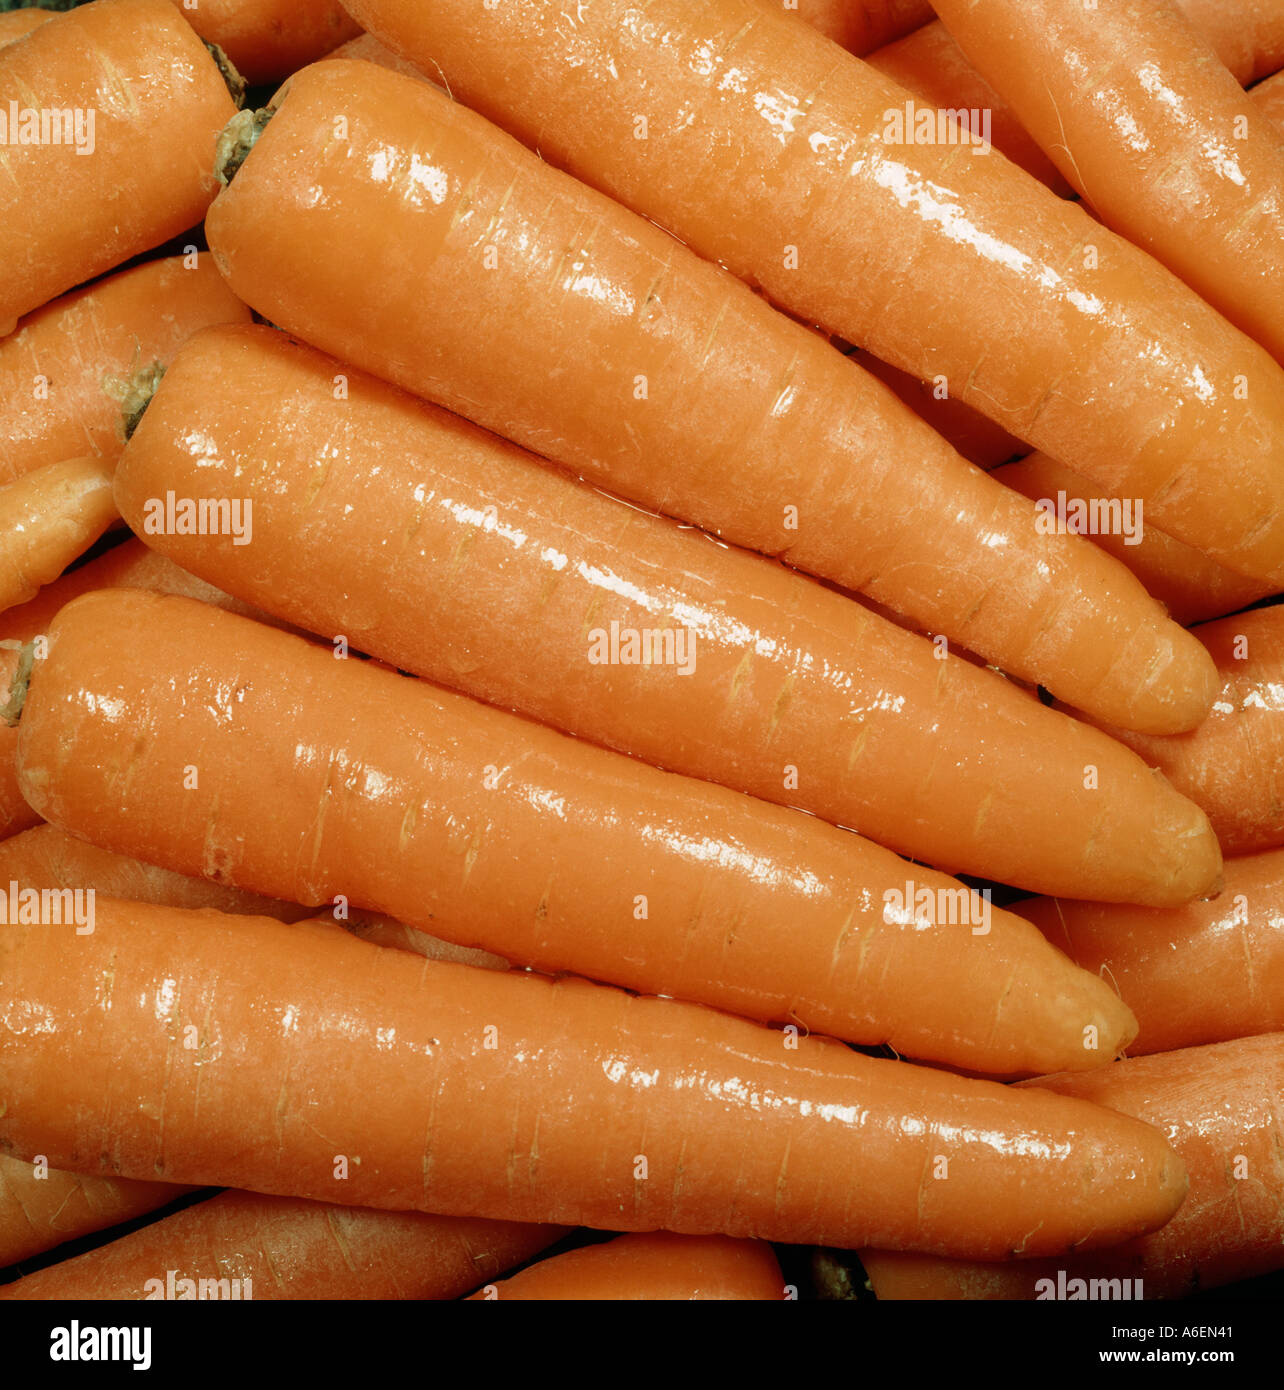 Ben modellato anche dimensionato e rabboccato tailed carote dopo il lavaggio Foto Stock